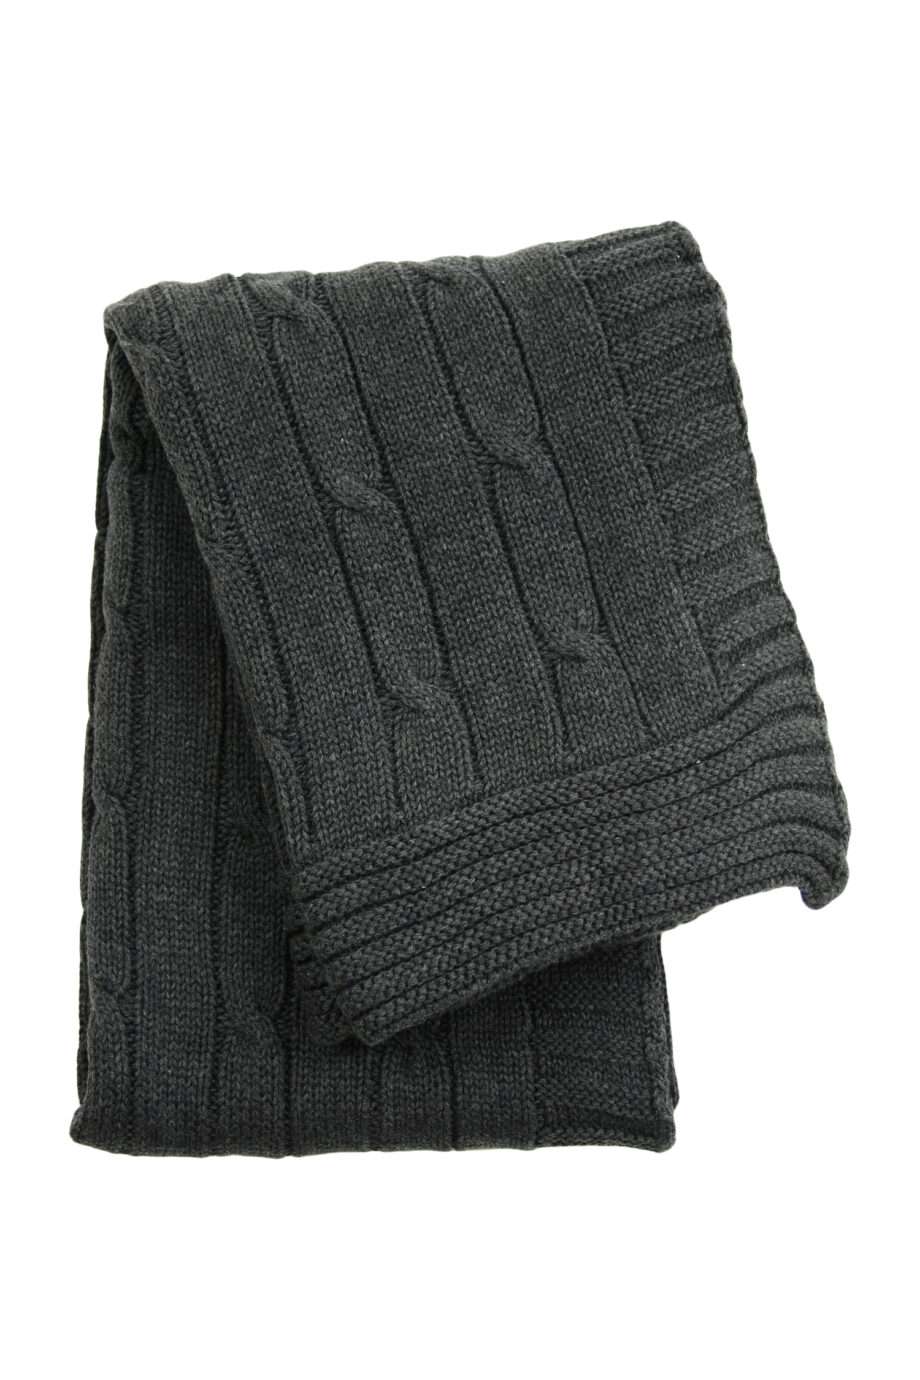 twist anthracite knitted cotton little blanket medium